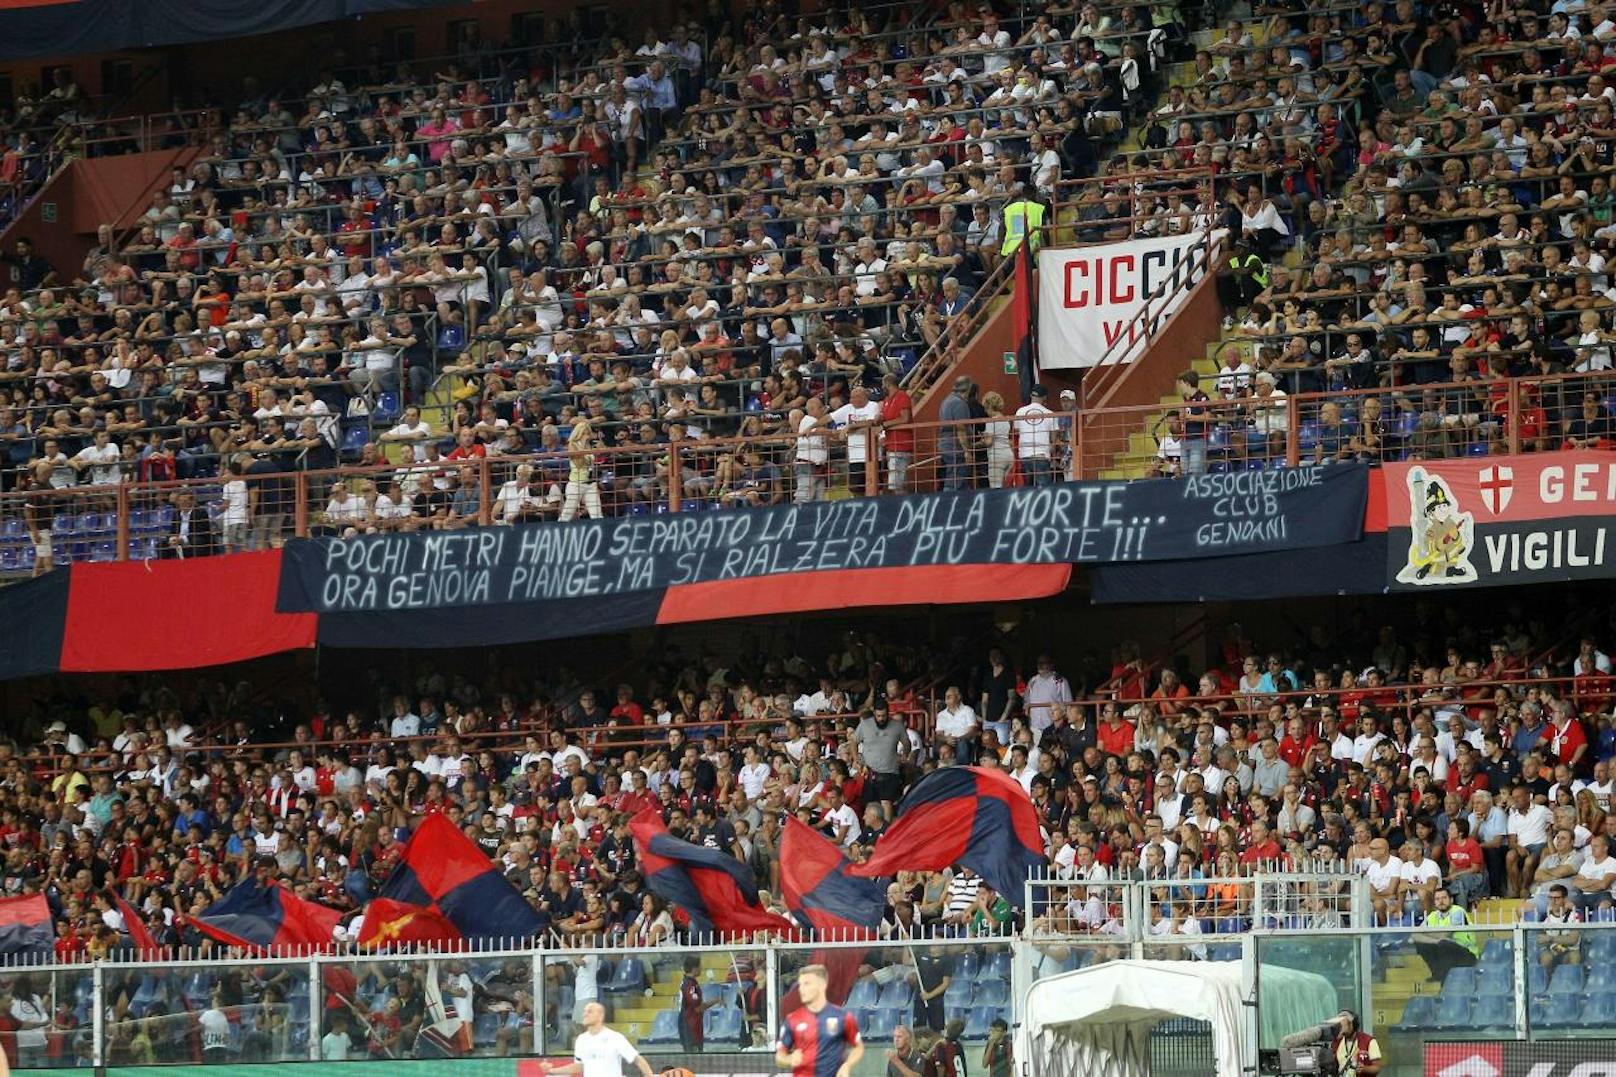 Die Fans bleiben 43 Minuten still, obwohl CFC Genua in dieser Zeit zwei Tore schießt.